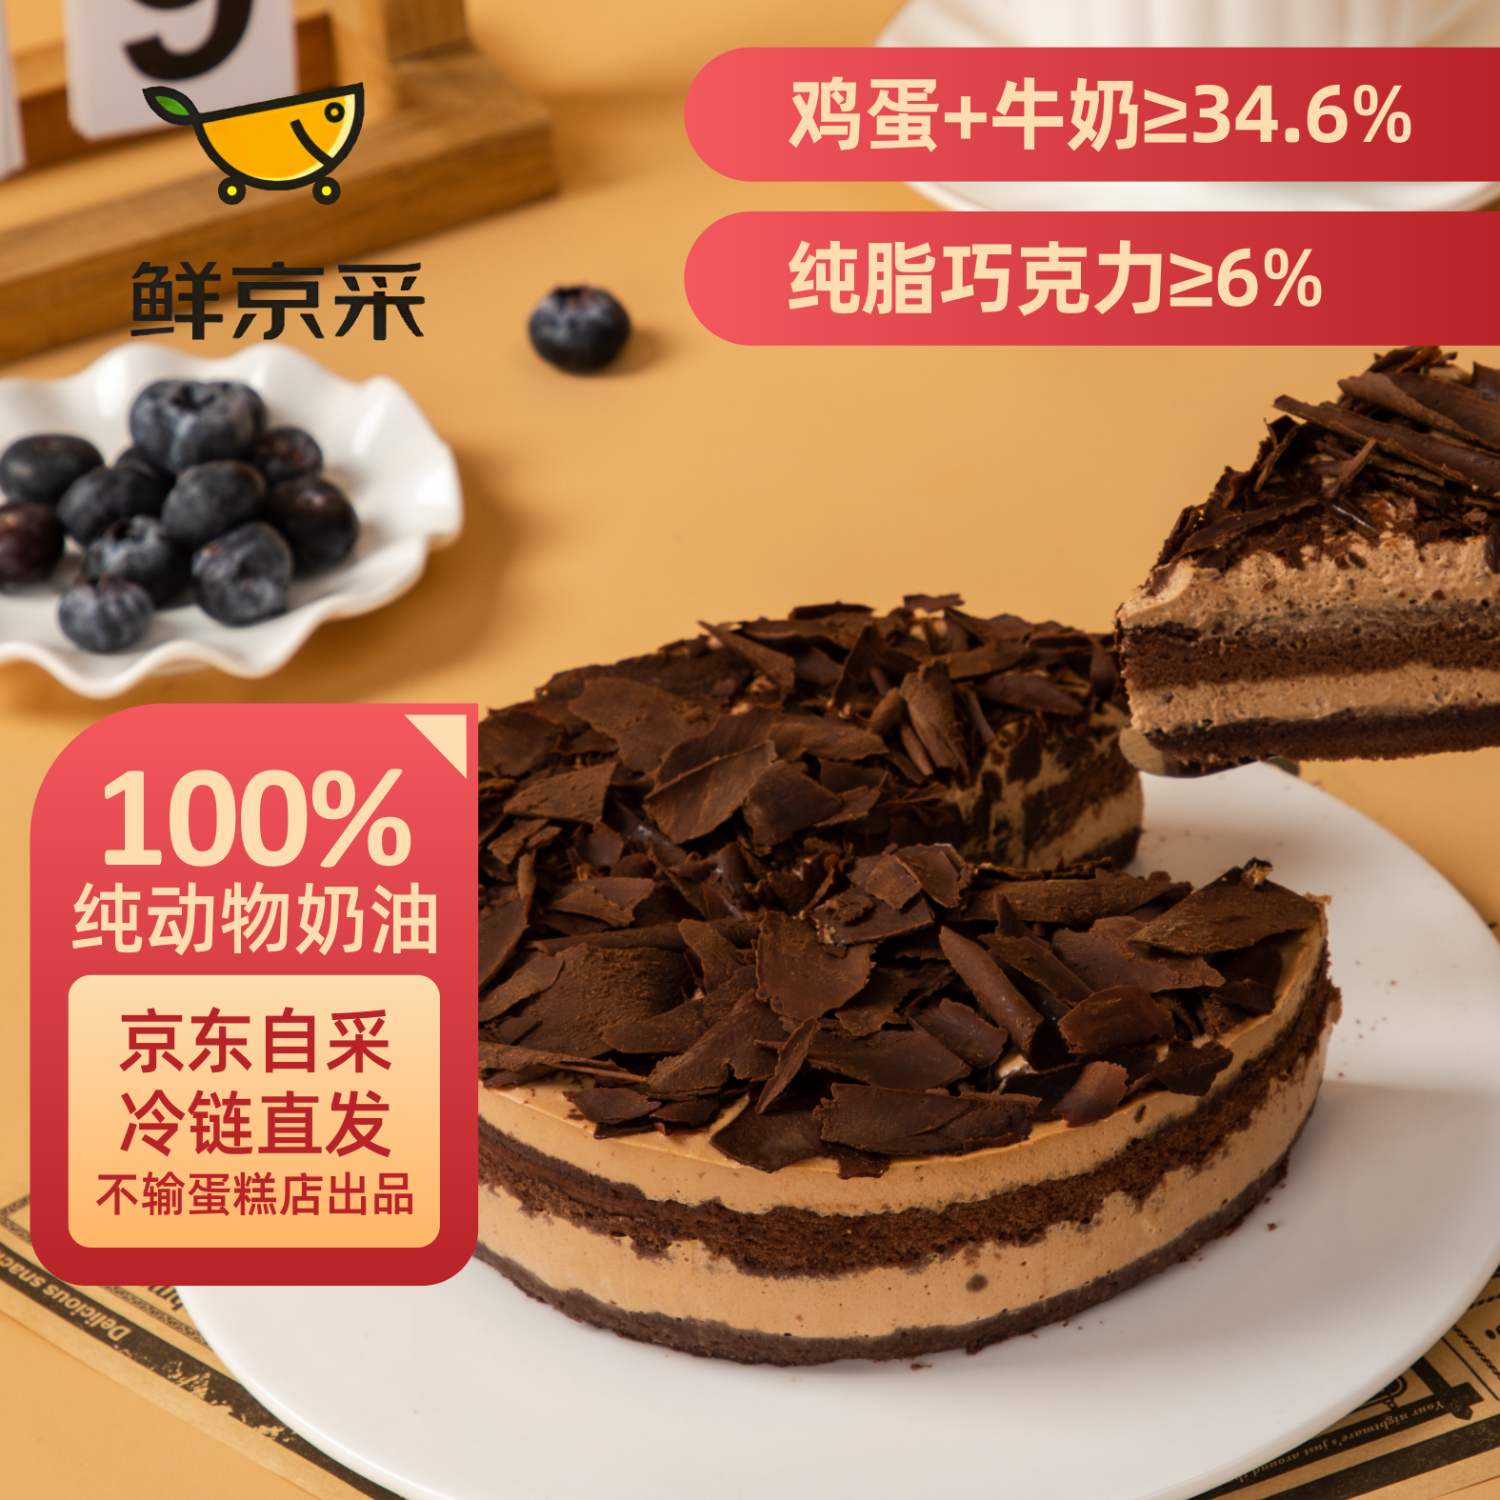 鲜京采黑巧酪酪香脆慕斯 6寸（6块装420g）巧克力蛋糕下午茶西式糕点